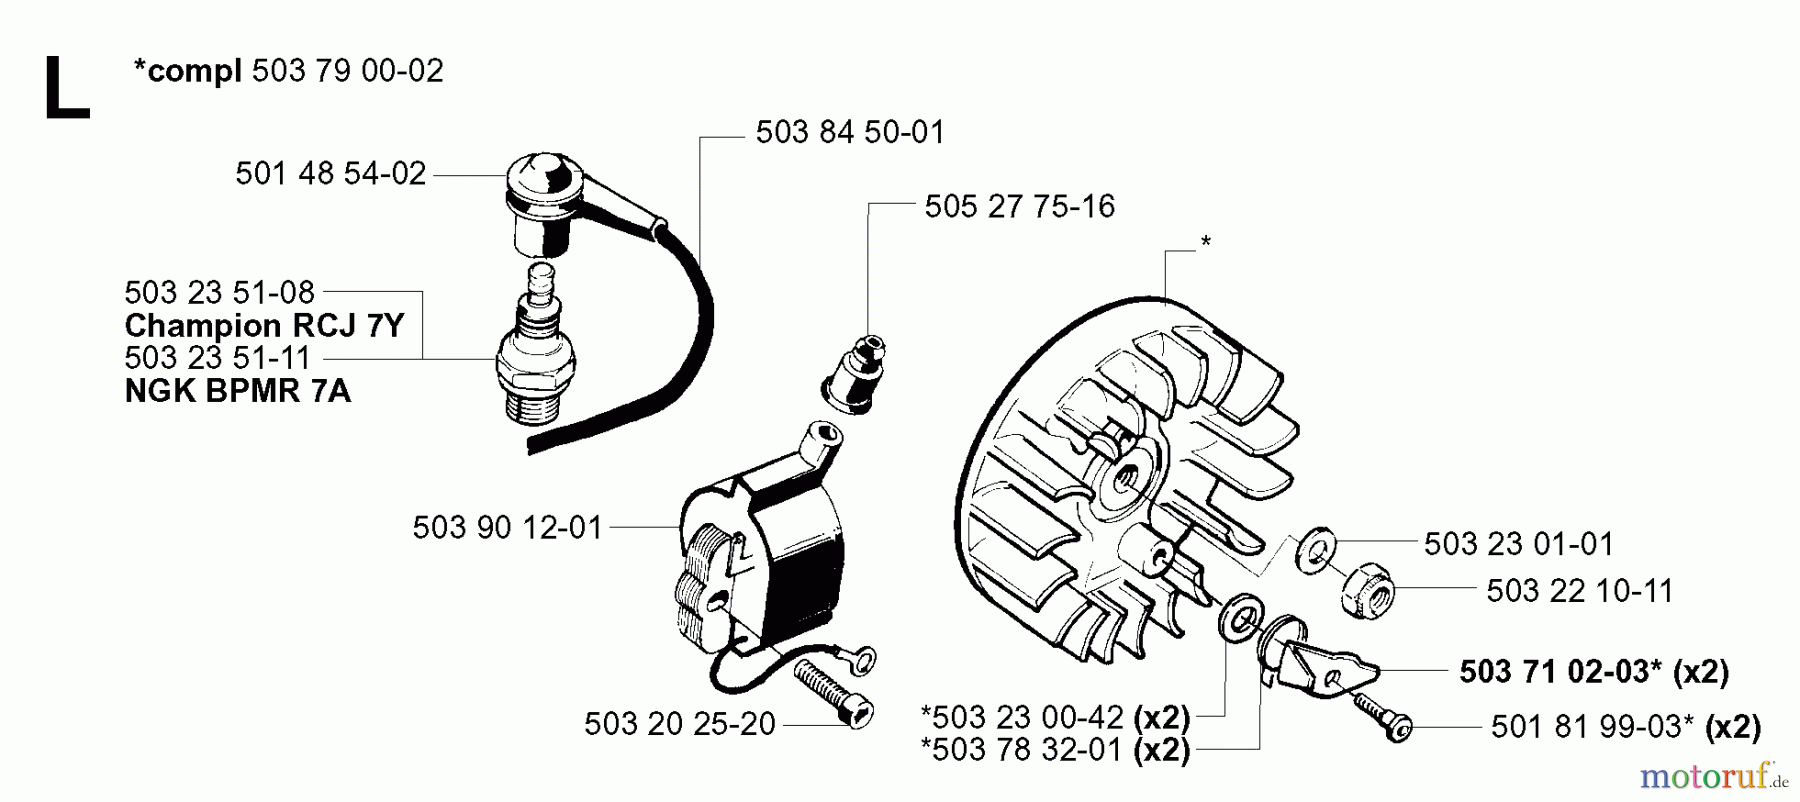  Jonsered Motorsensen, Trimmer RS44 EPA - Jonsered String/Brush Trimmer (2001-03) IGNITION SYSTEM